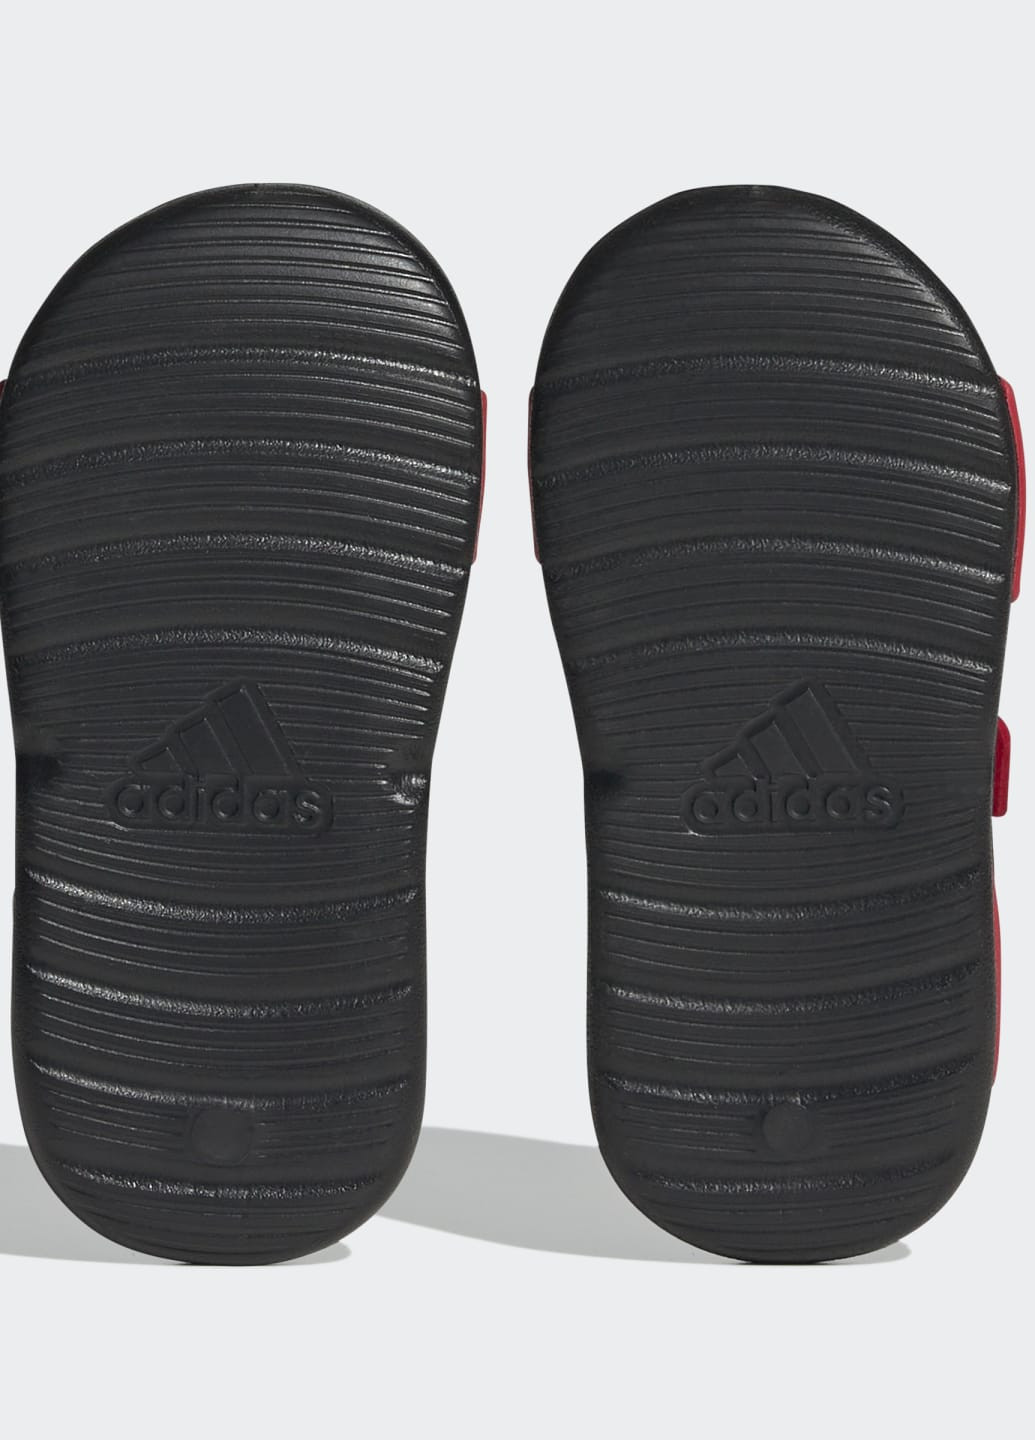 Красные спортивные сандалии altaswim adidas